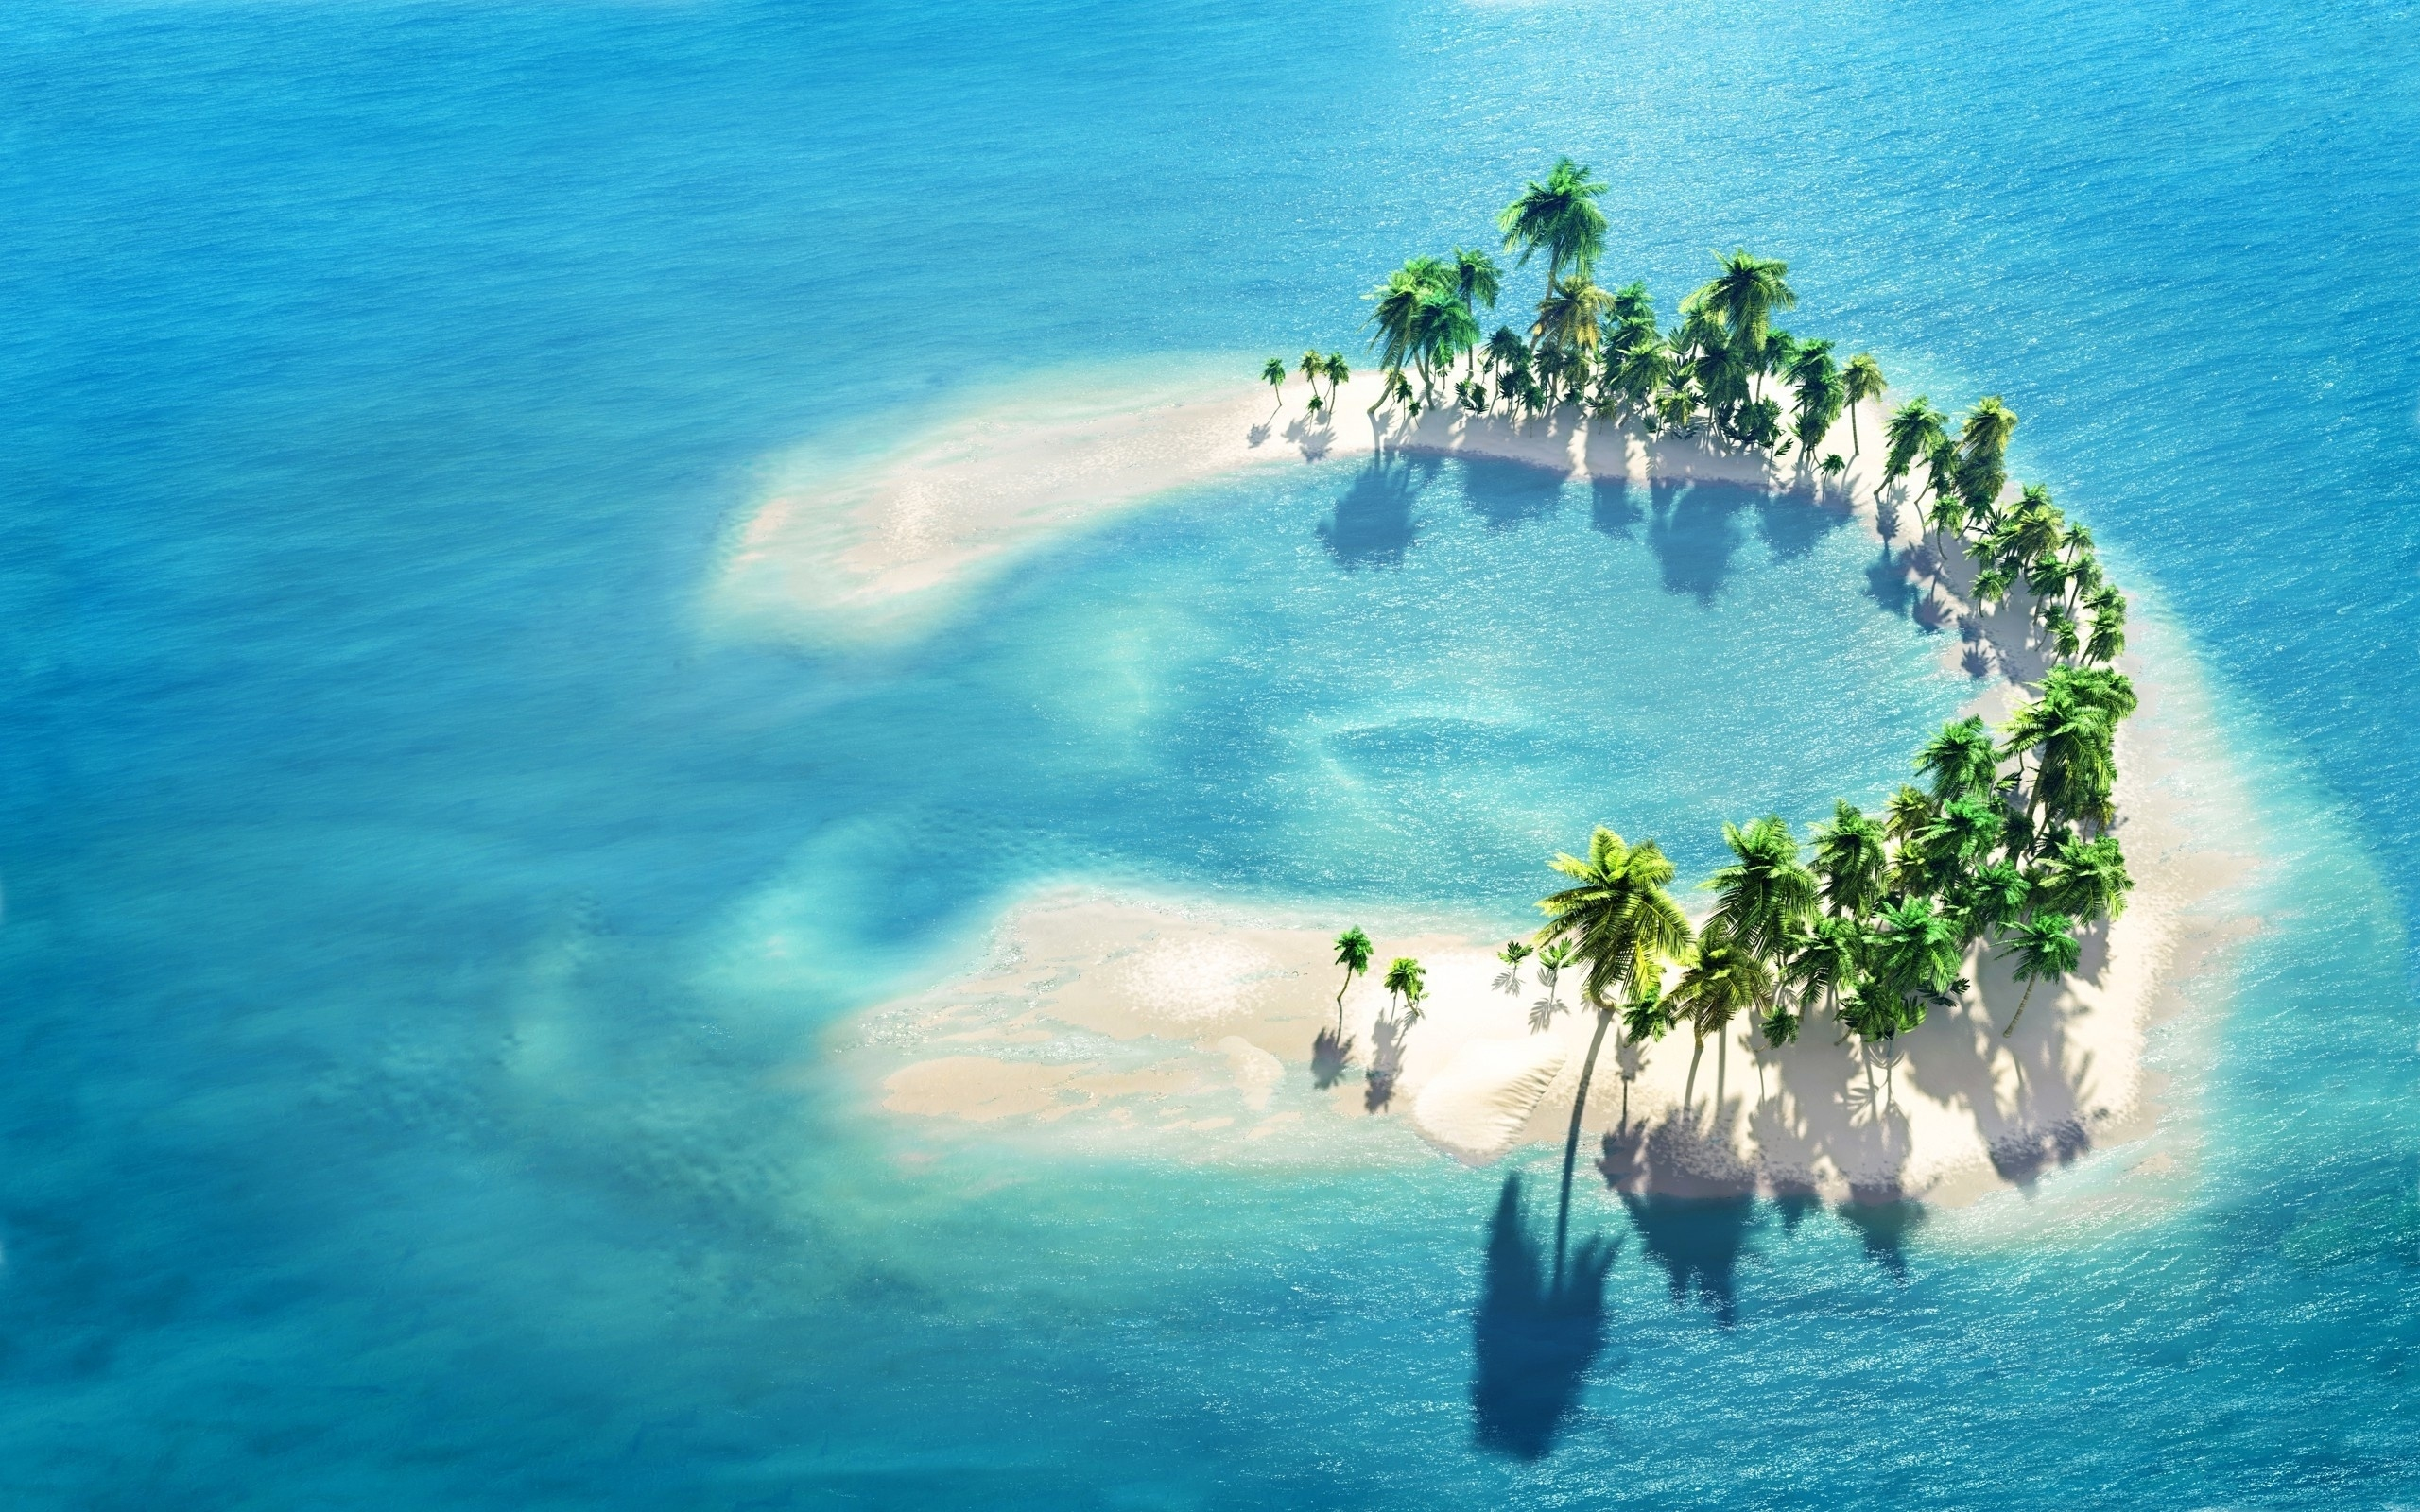 Скачать обои бесплатно Море, Пальмы, Океан, Остров, Мальдивы, Земля/природа картинка на рабочий стол ПК